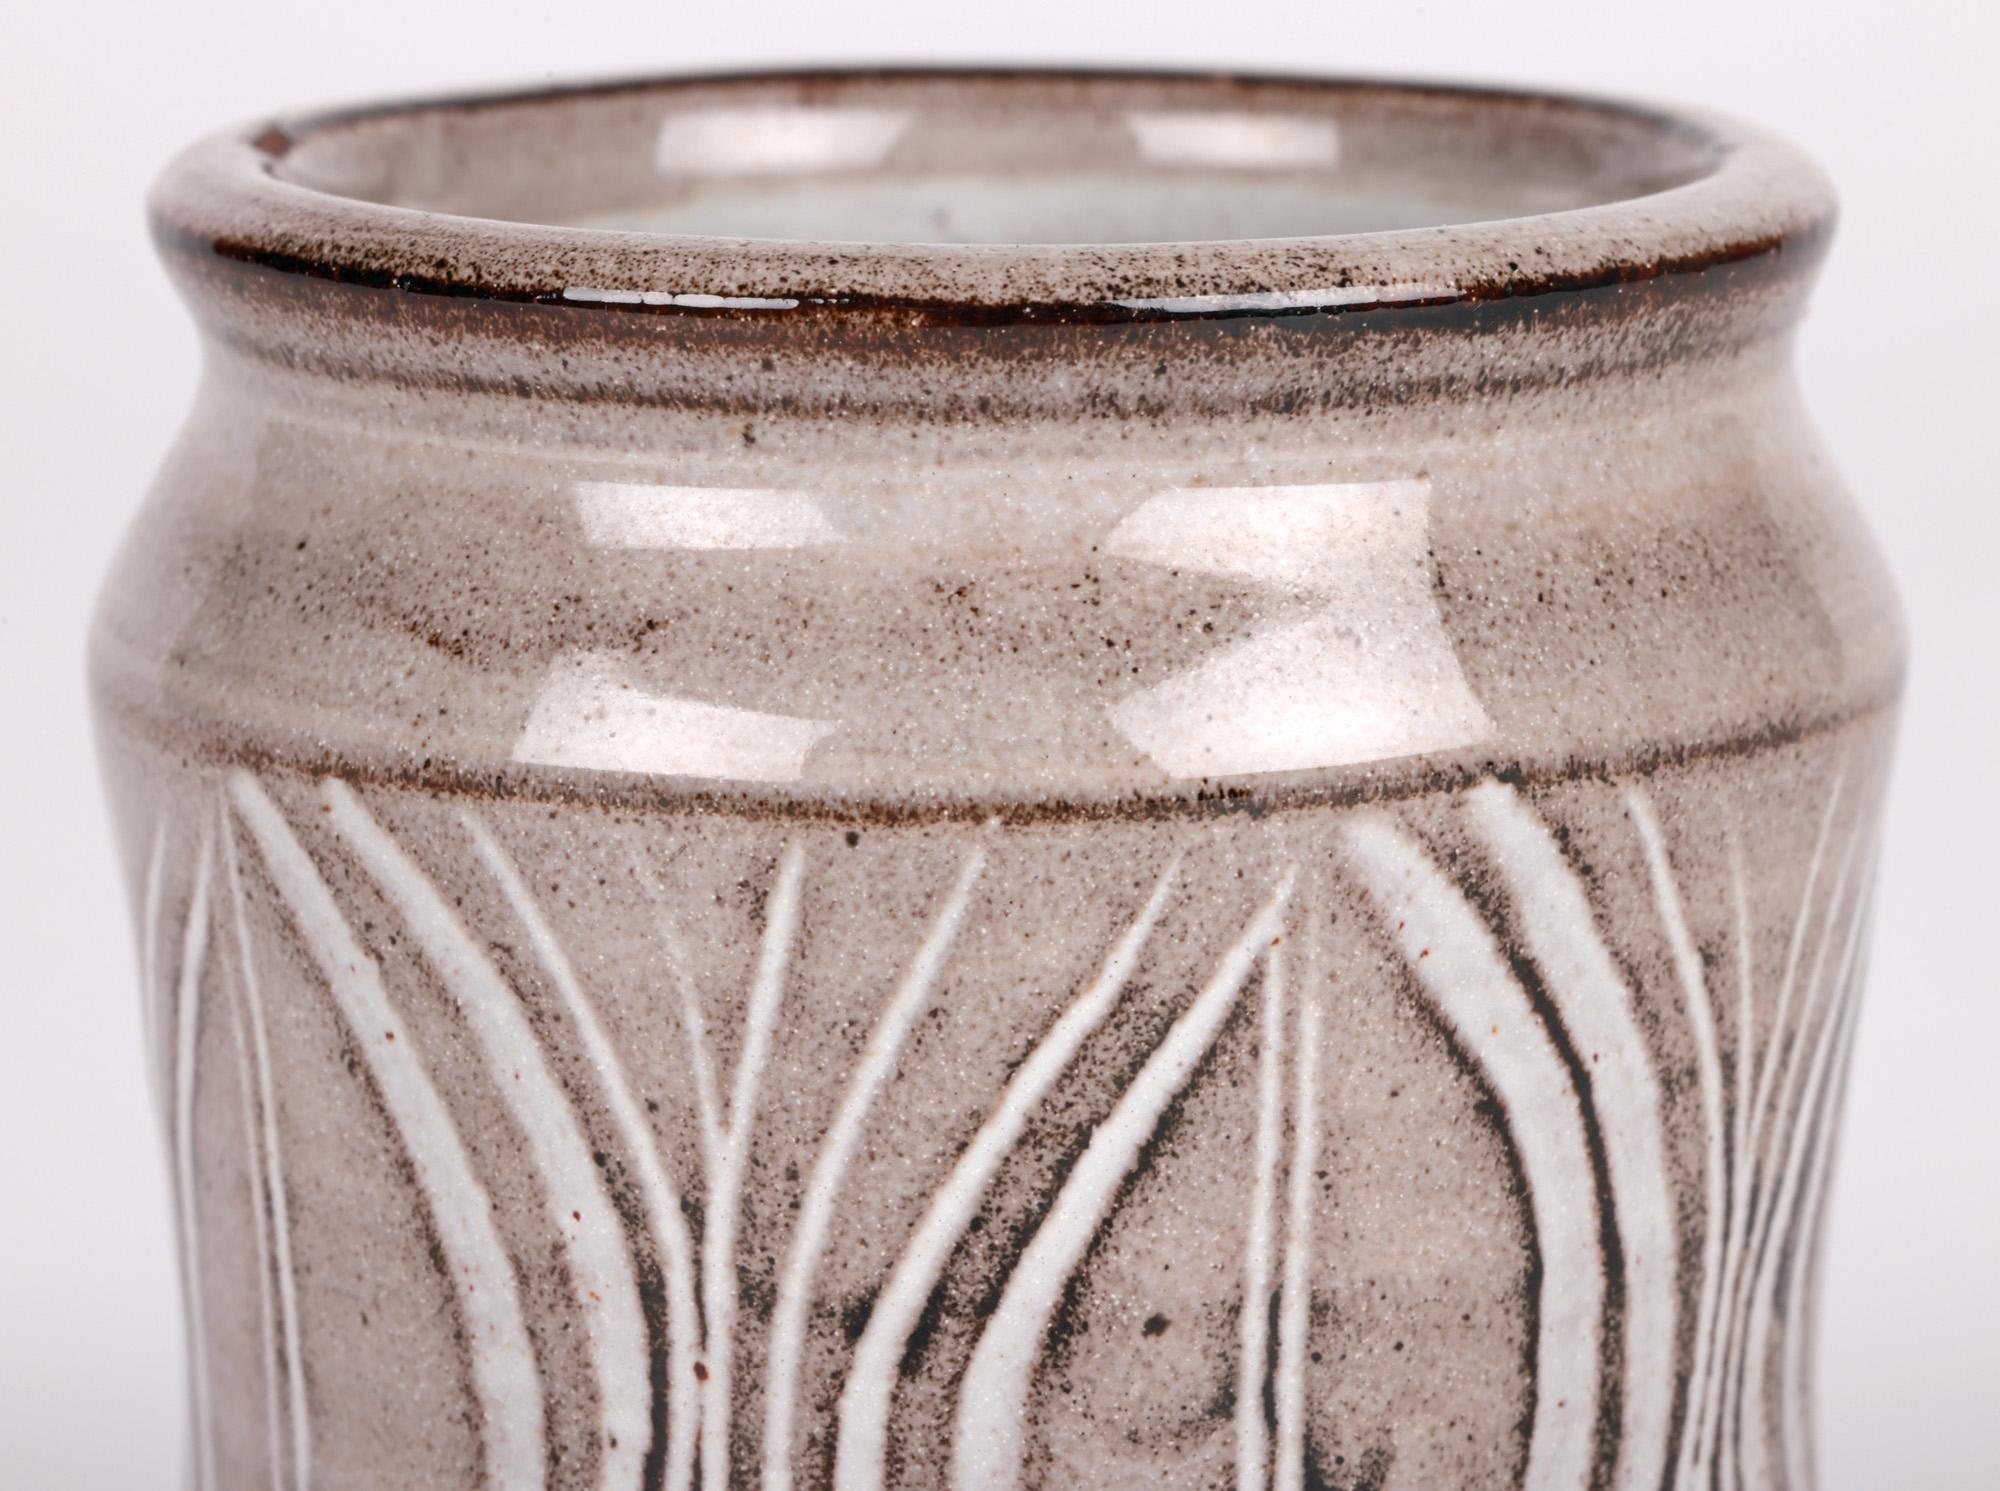 Eine reizvolle Lowerdown Pottery Steingut Studio Keramik Albarello Form Vase Hand mit Samenschoten Designs von renommierten Töpfer David Leach (British, 1911-2005) aus etwa 1970 verziert. Die handgedrehte Vase aus Terrakotta-Ton steht auf einem